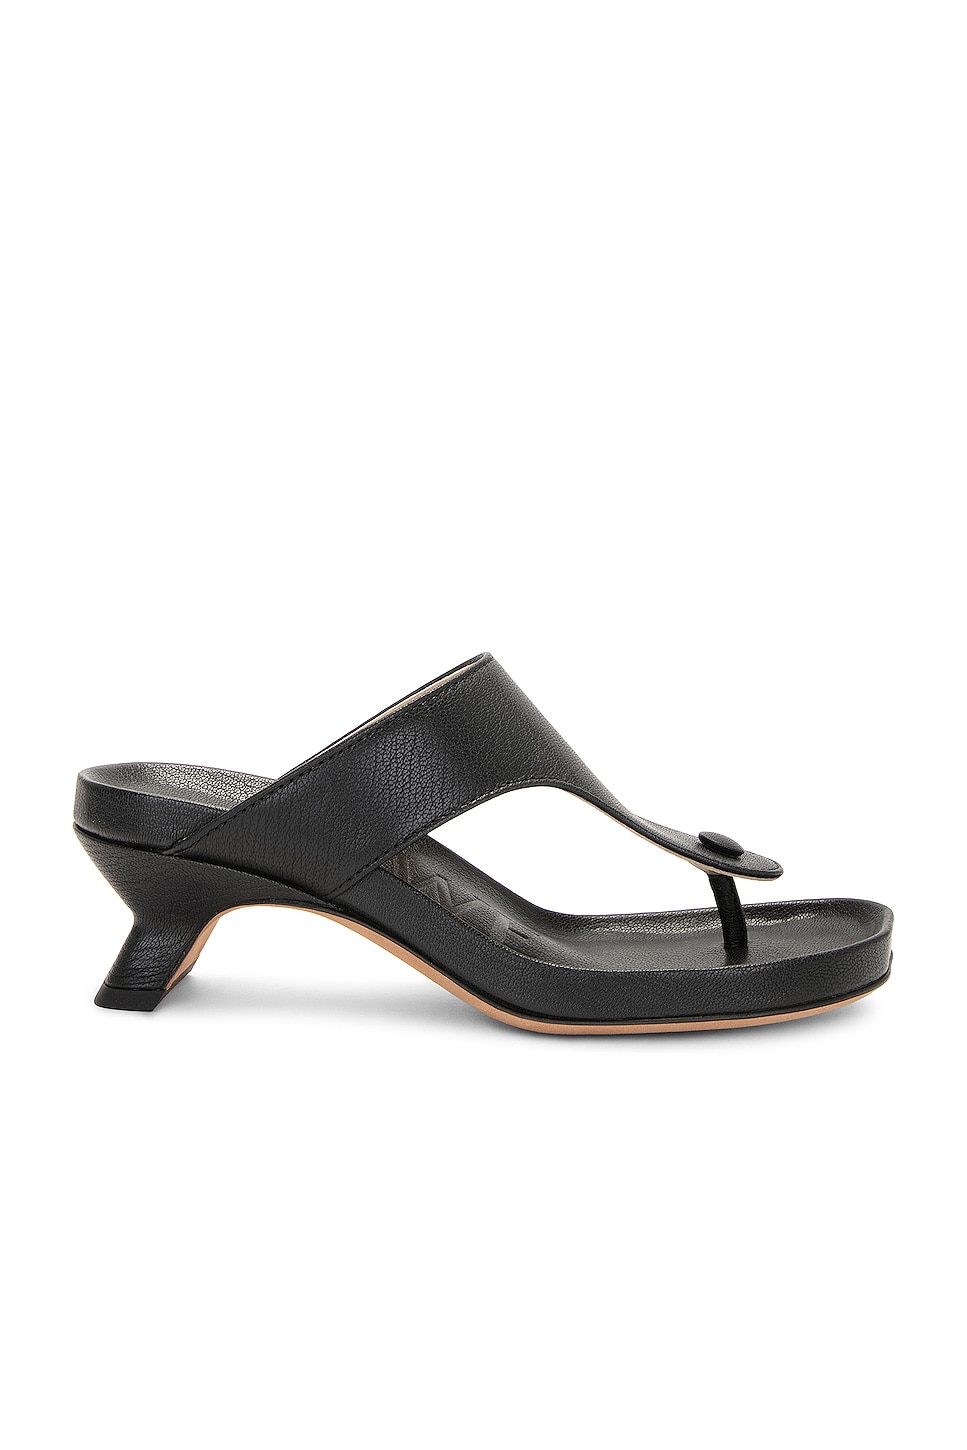 Loewe Ease Sandal in Black | FWRD